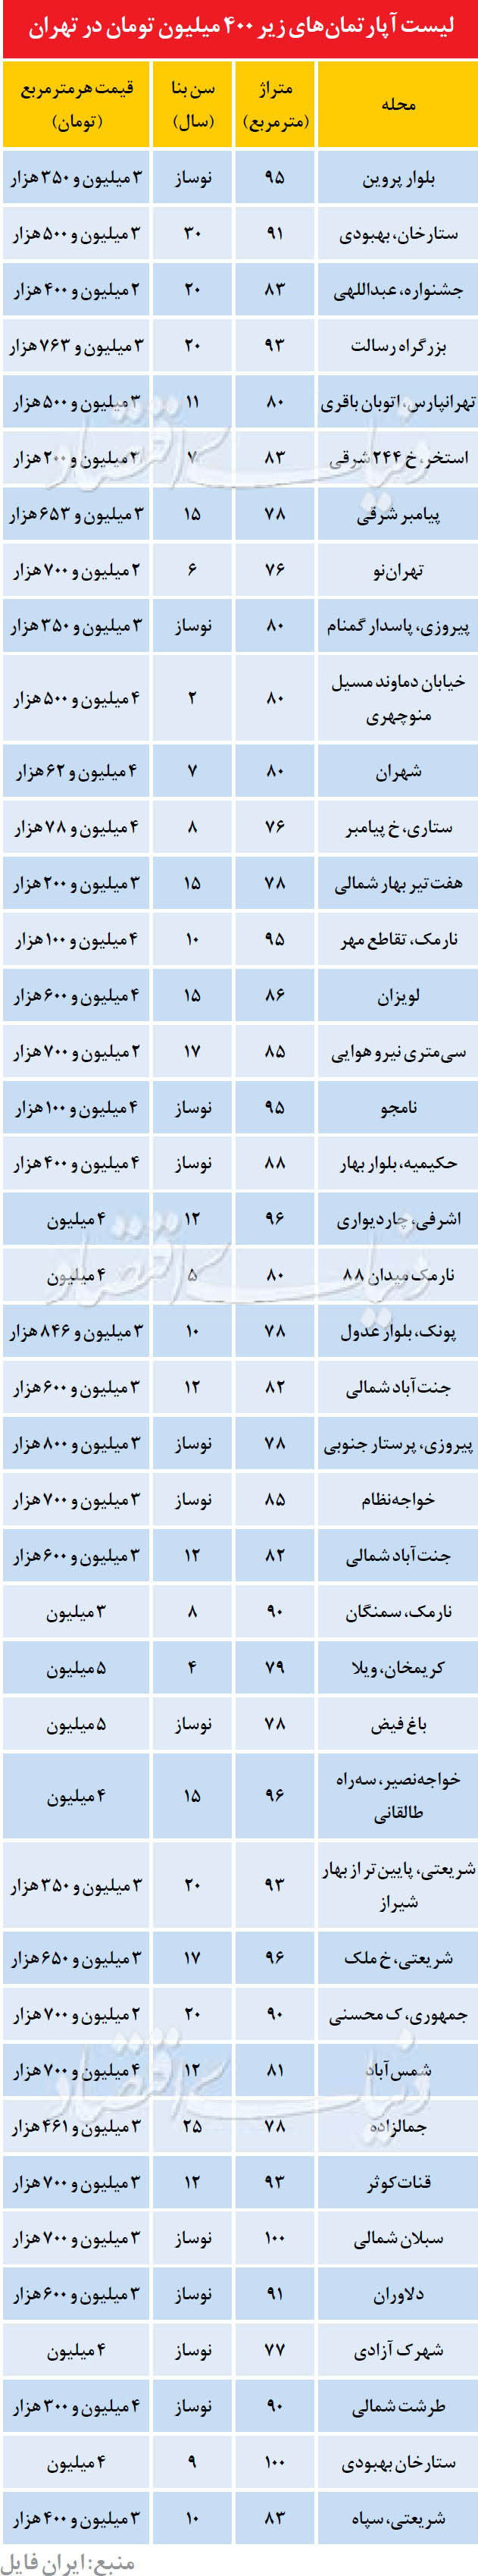 آپارتمانن های زیر 400 میلیون در تهران (جدول)